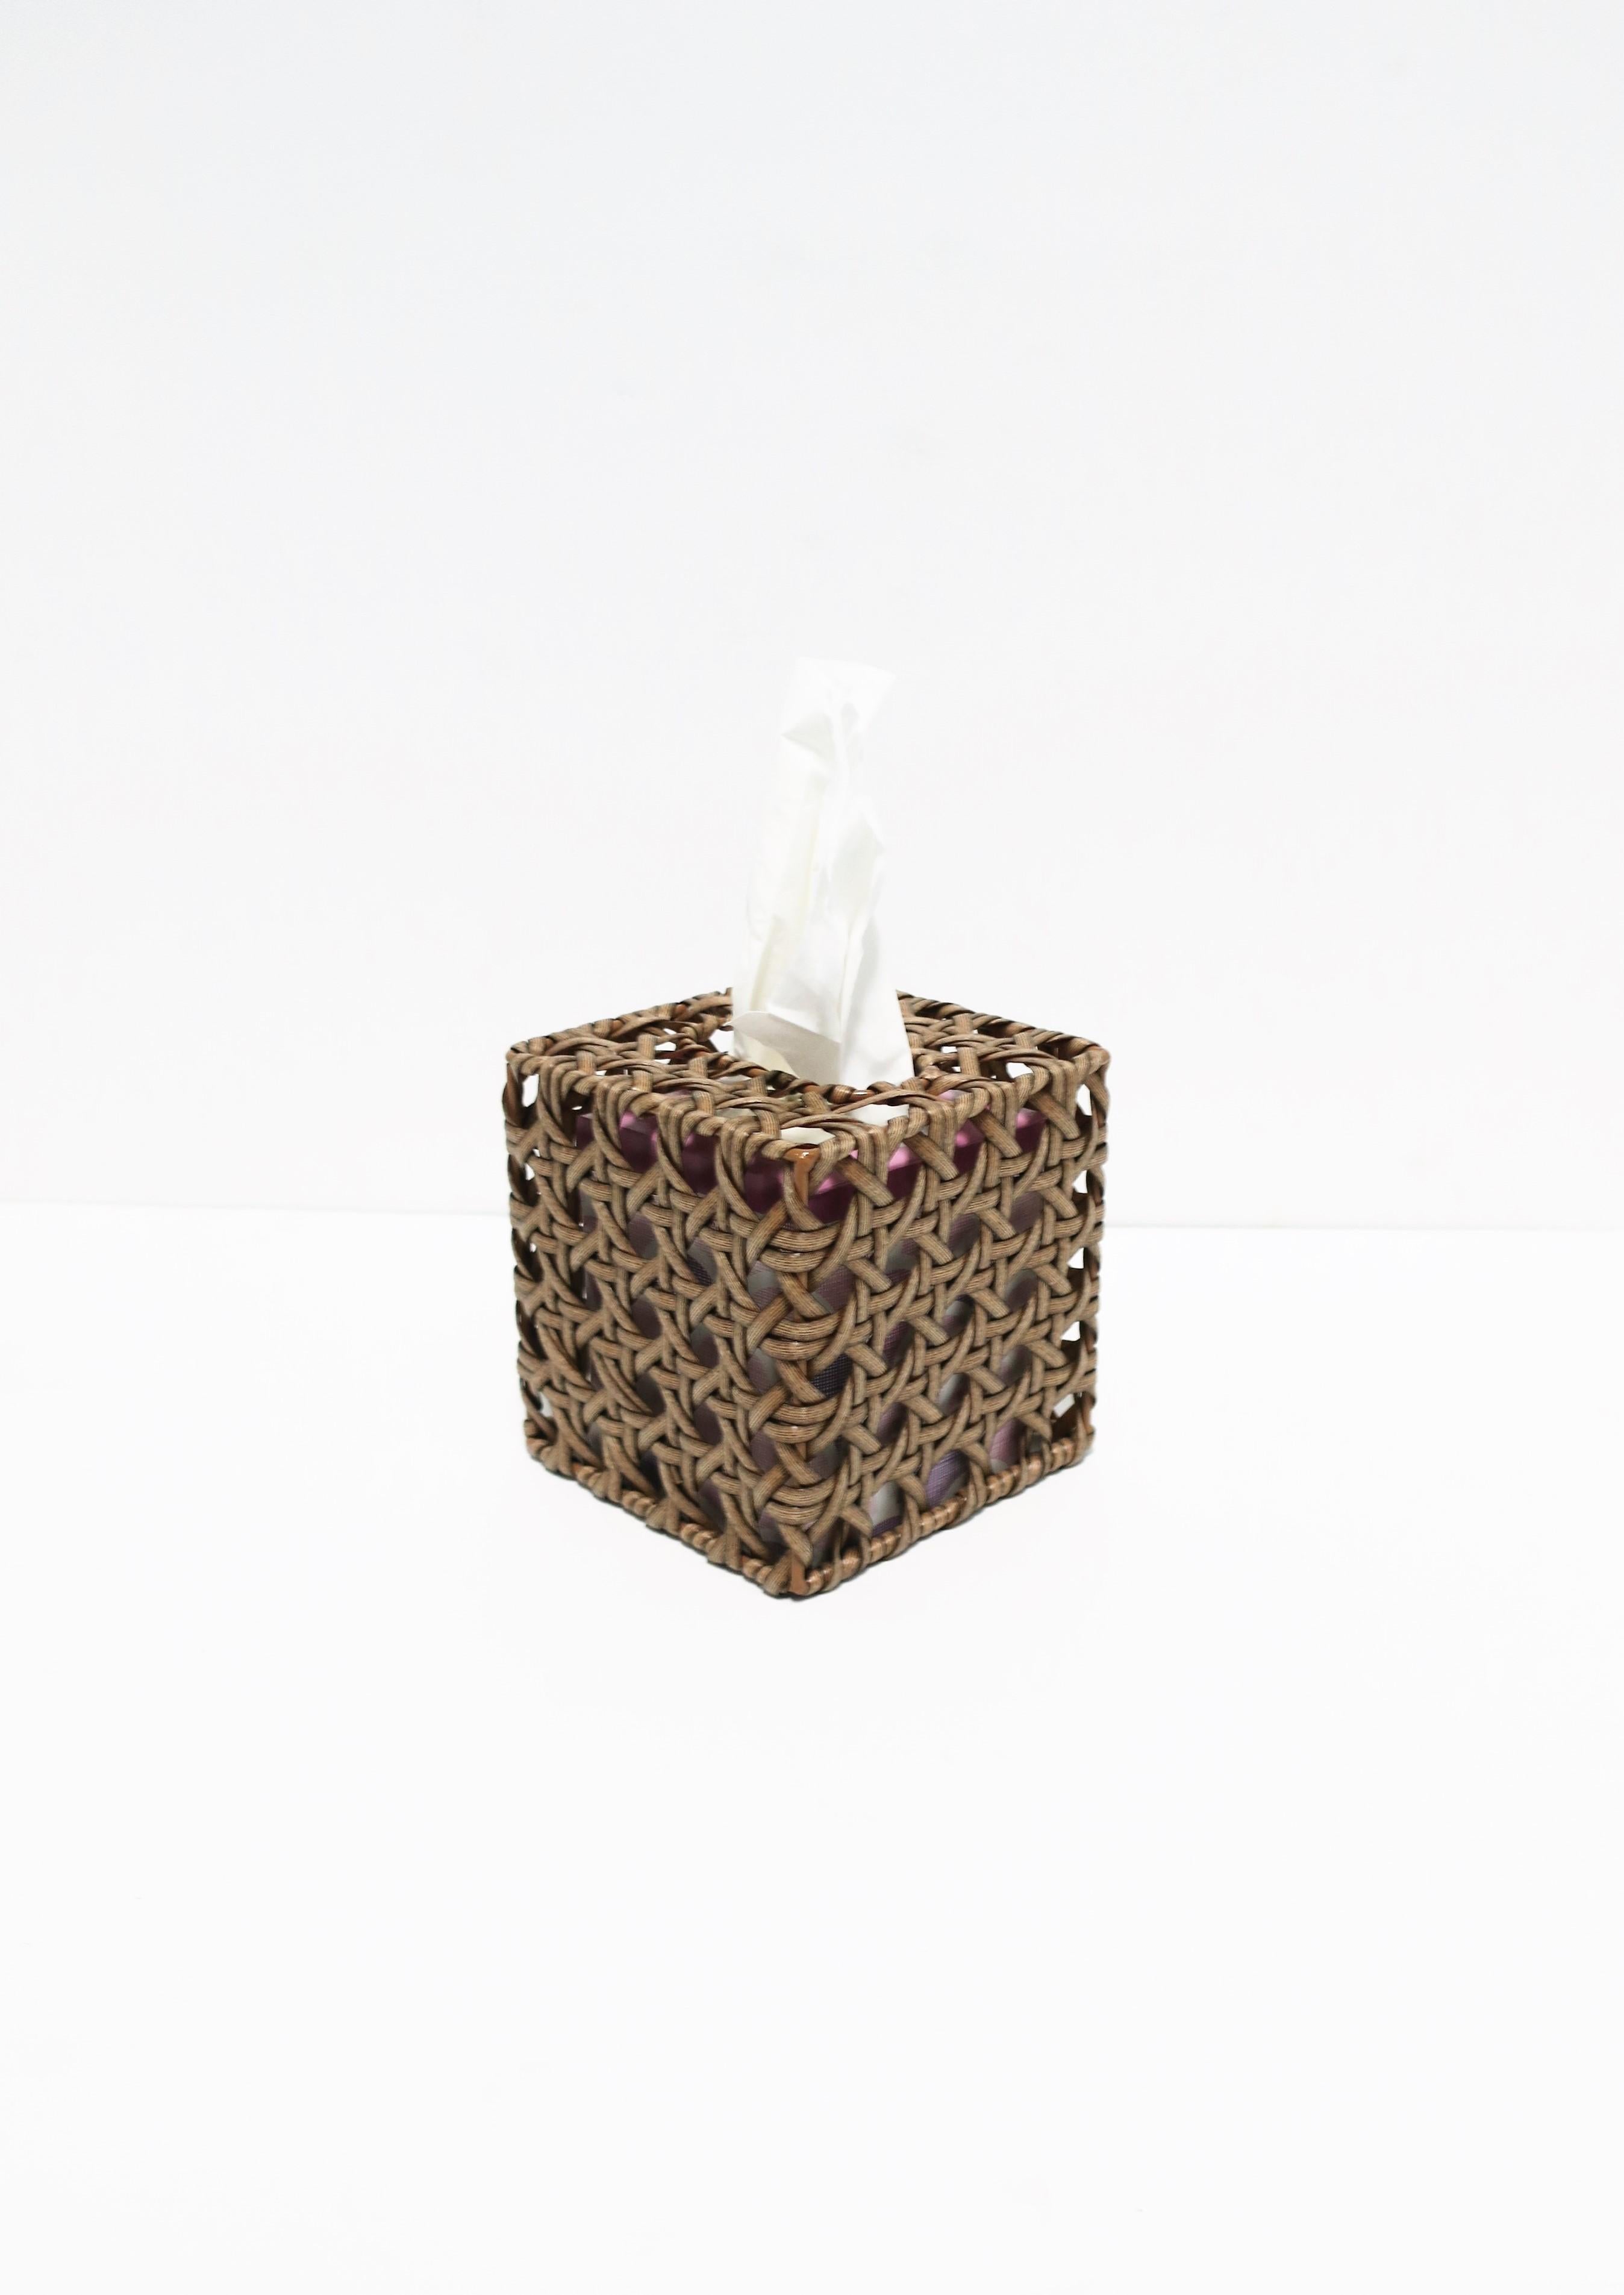 A contemporary wicker cane tissue box cover.